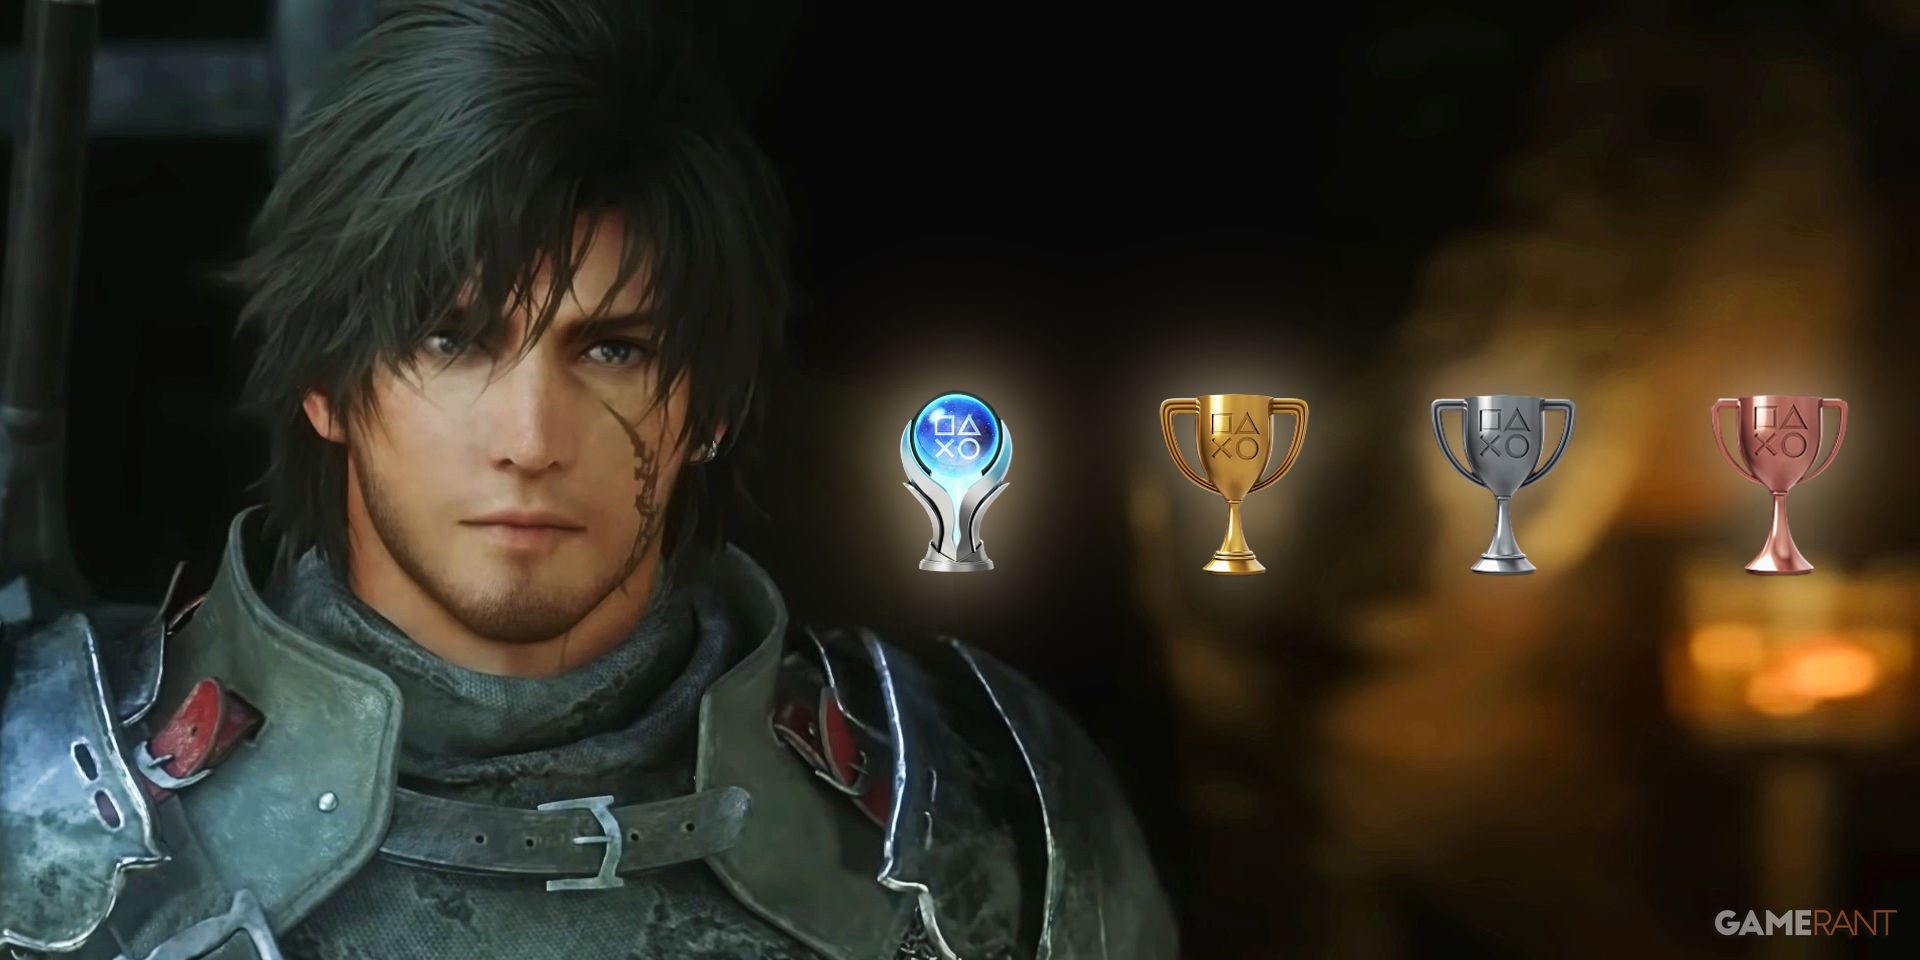 Final Fantasy XVI: Echoes of the Fallen Trophy Guide & Roadmap